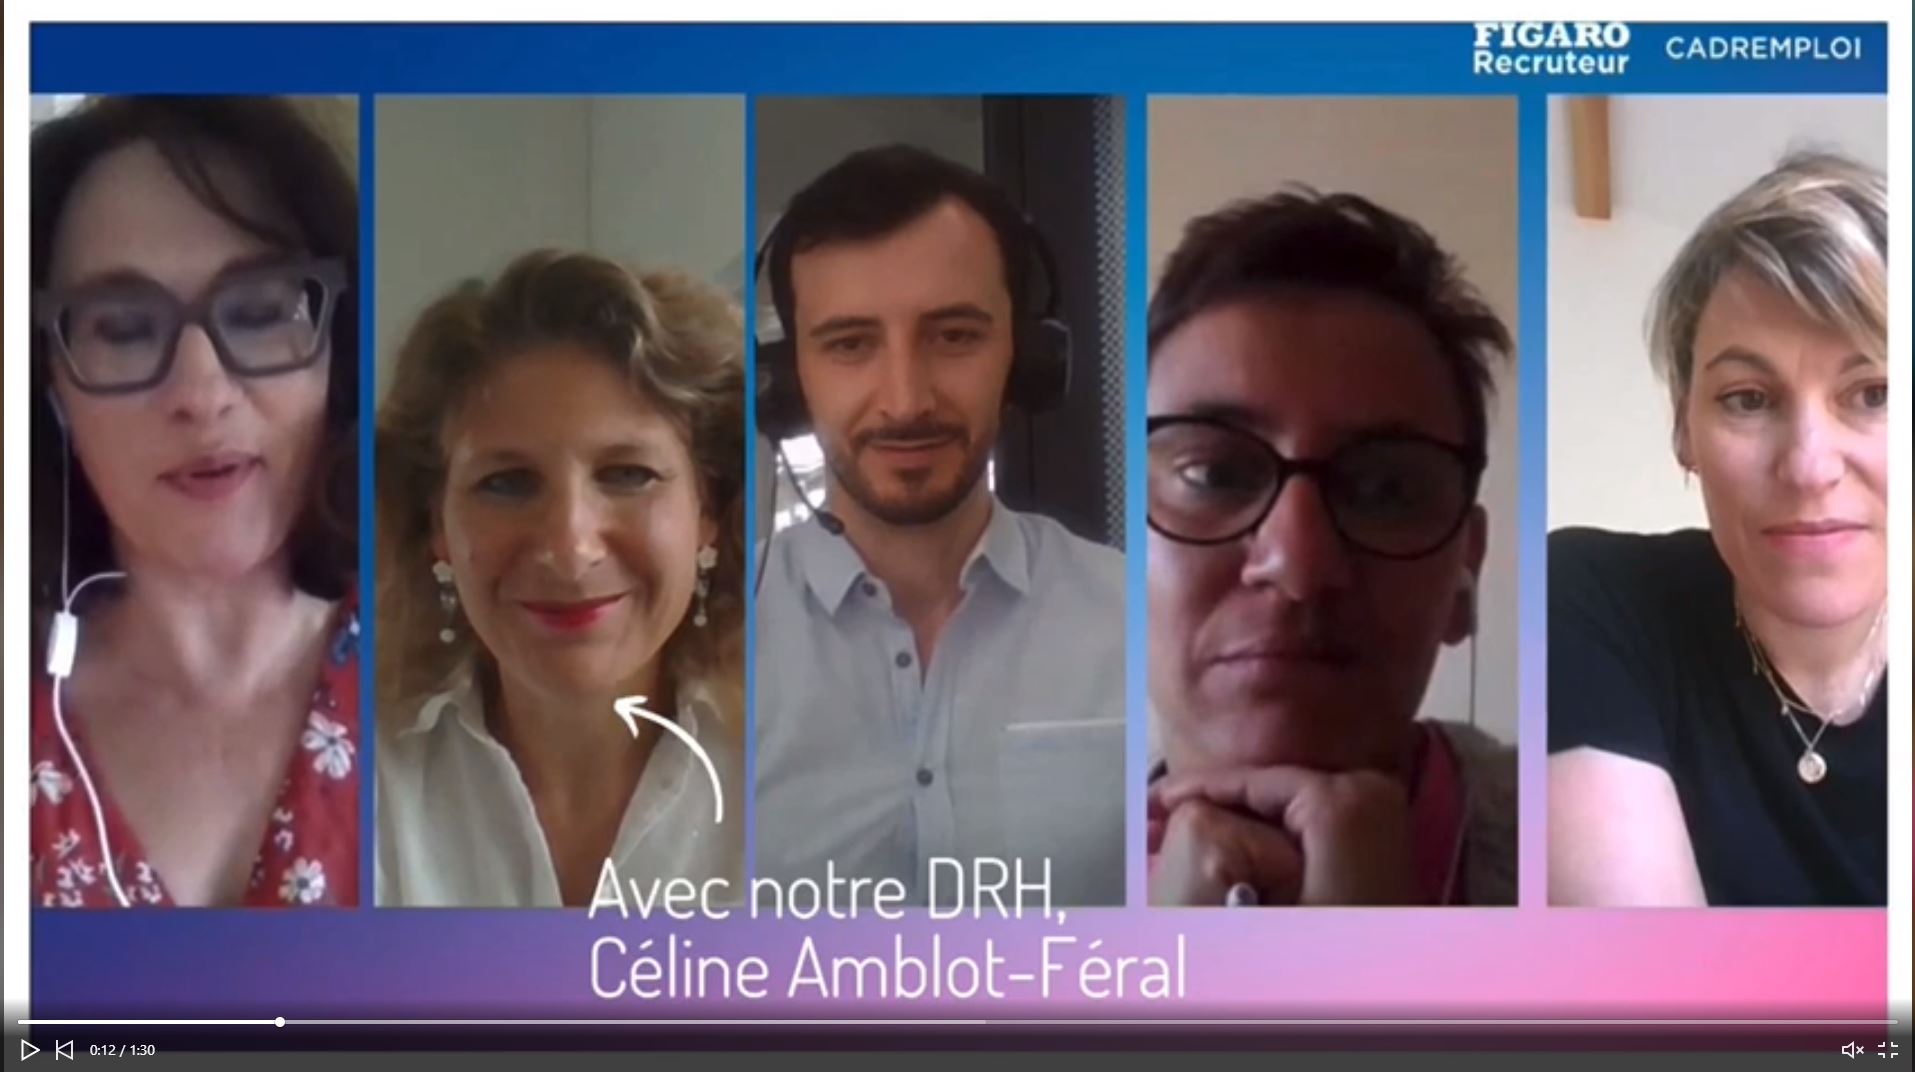 Le Figaro Recruteur et Cadre Emploi ont donné la parole à notre DRH, Céline Amblot Feral